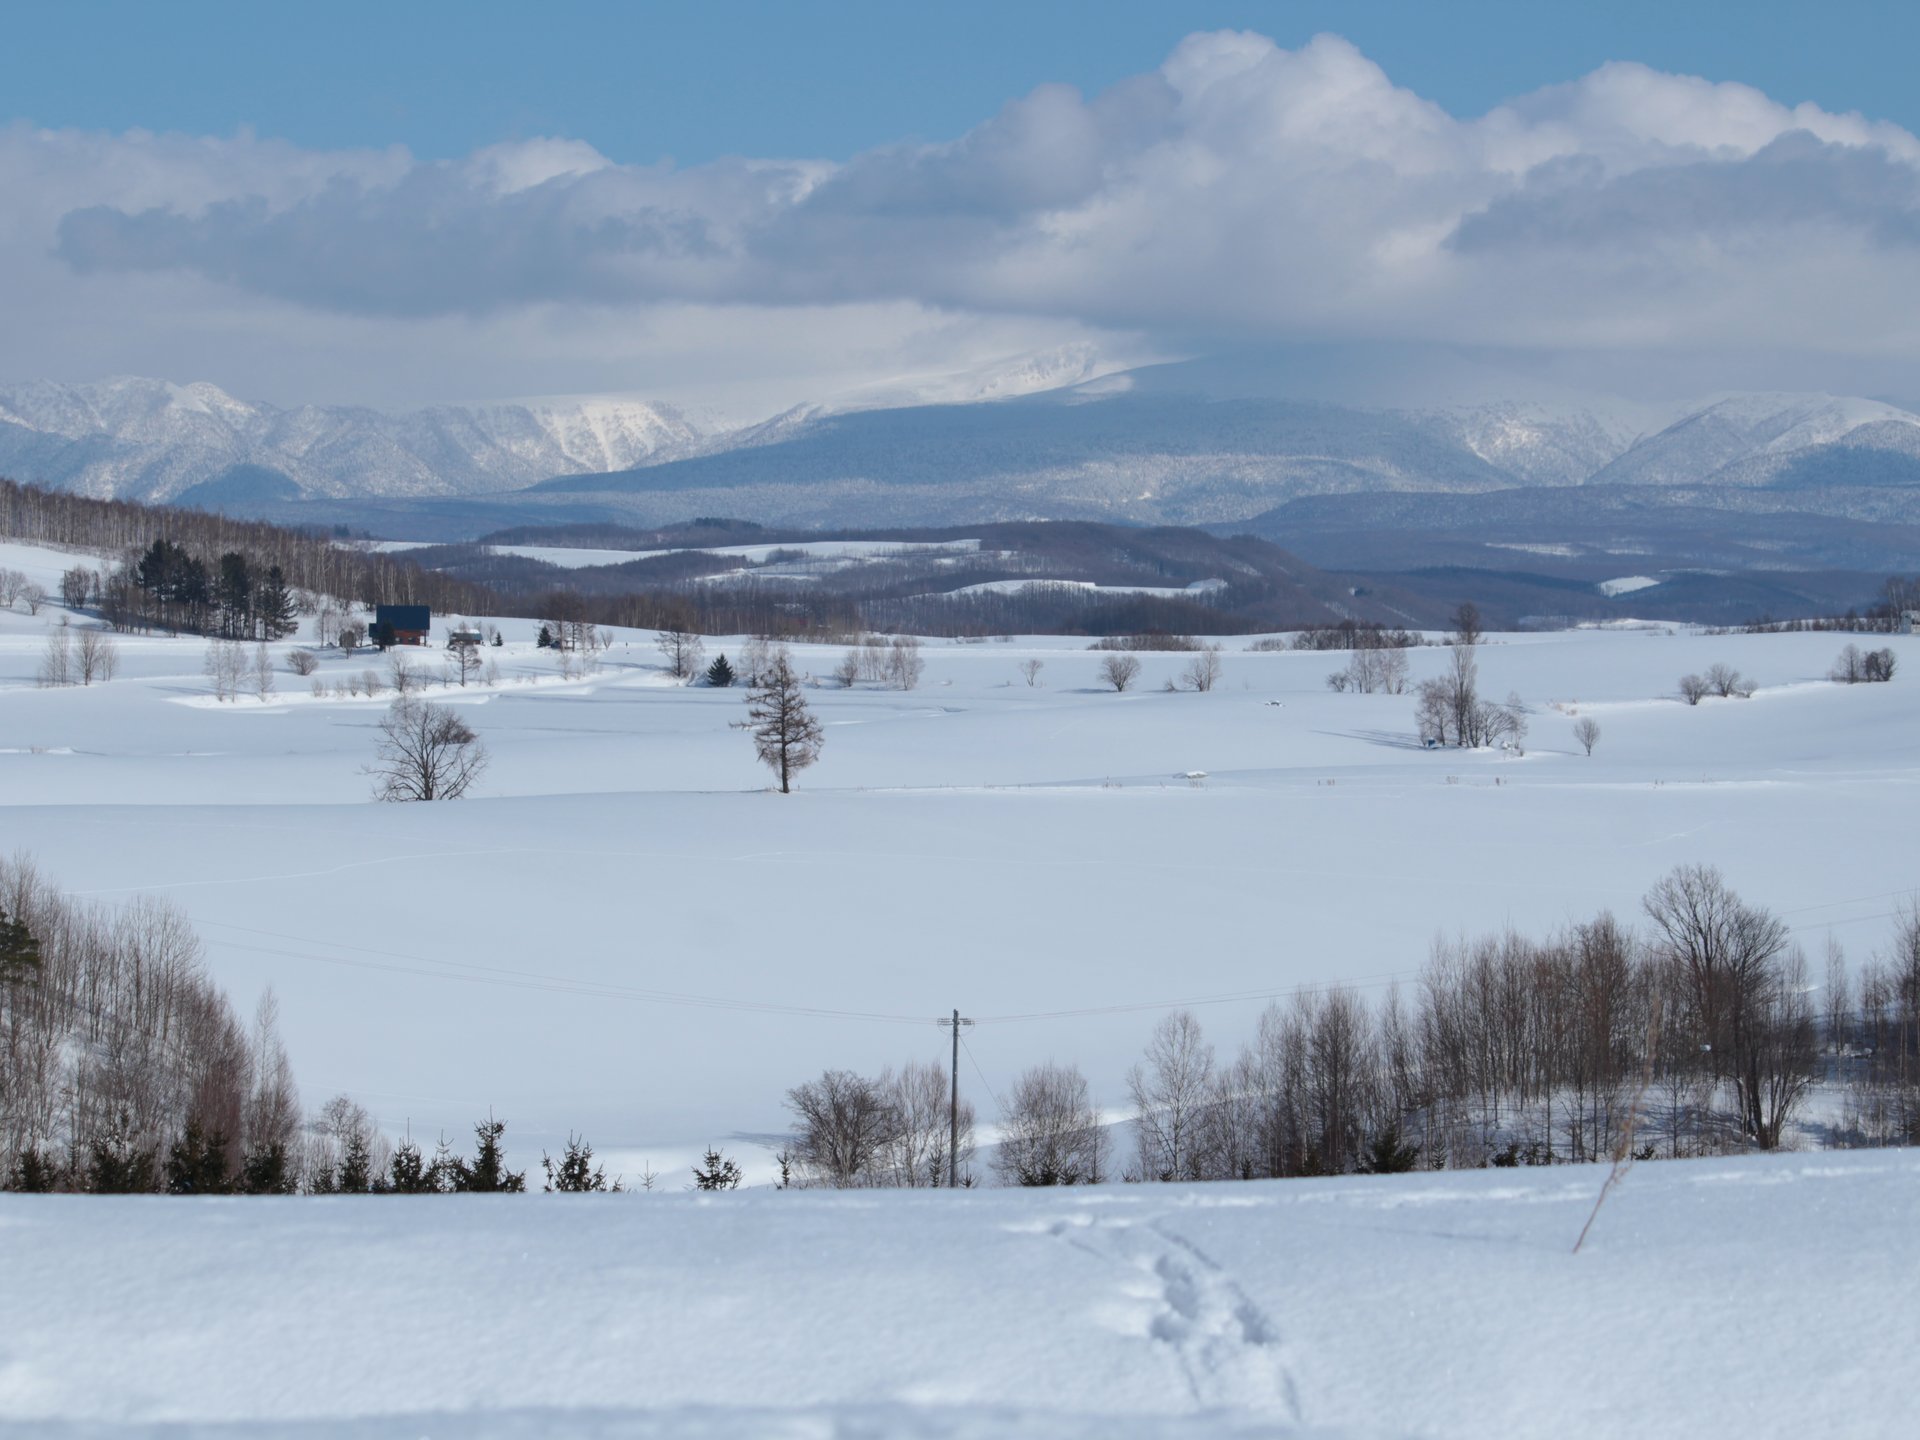 【冬の北海道】歩いて美瑛の丘へ。一面の銀世界と静寂に包まれる散歩コース